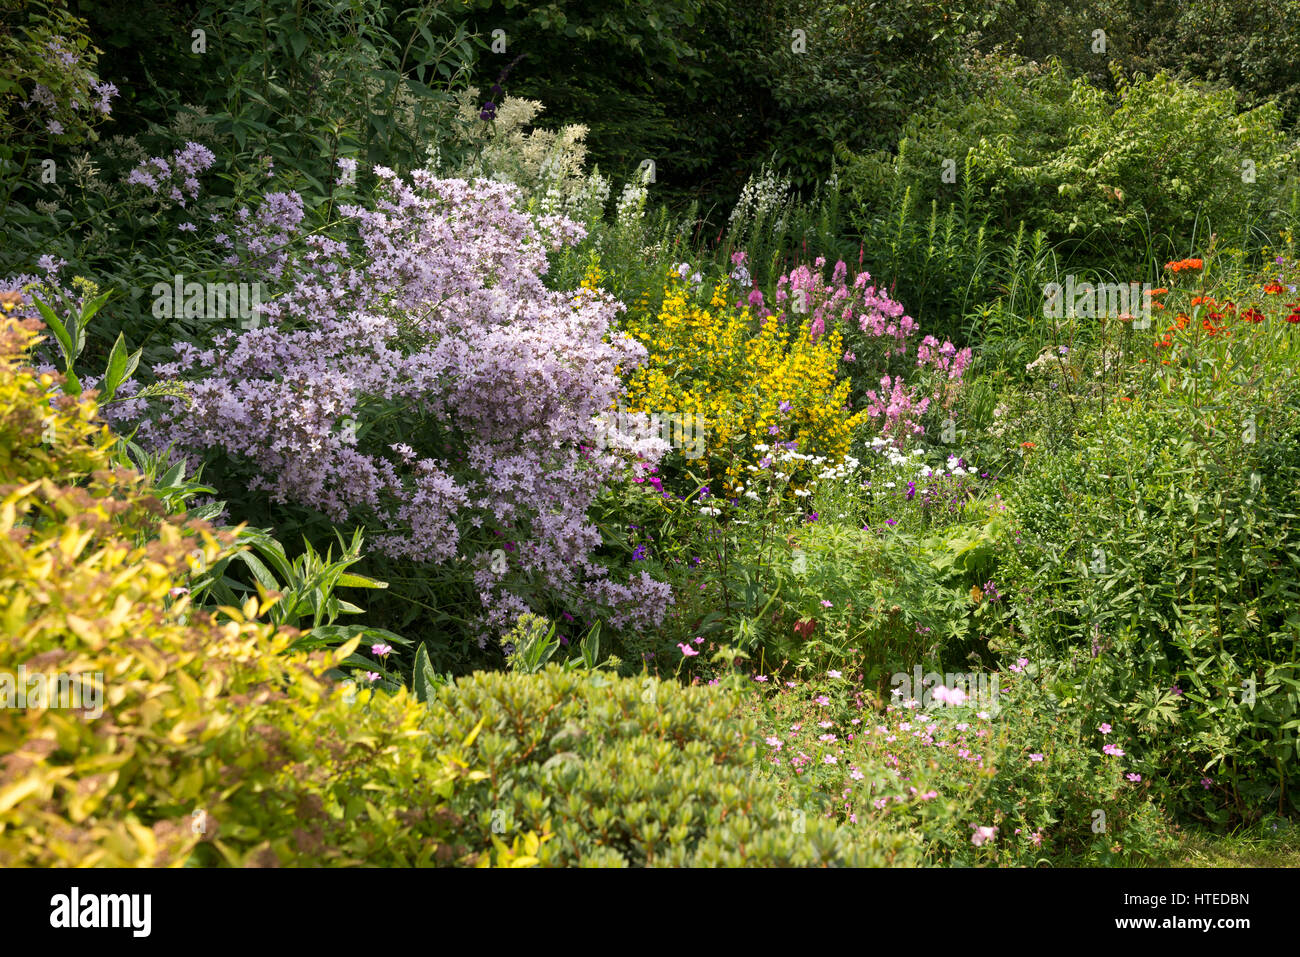 Fiore coloratissimo frontiere in un cottage in stile giardino. Piantando mescolato di arbusti e piante perenni in piena crescita, metà luglio. Foto Stock